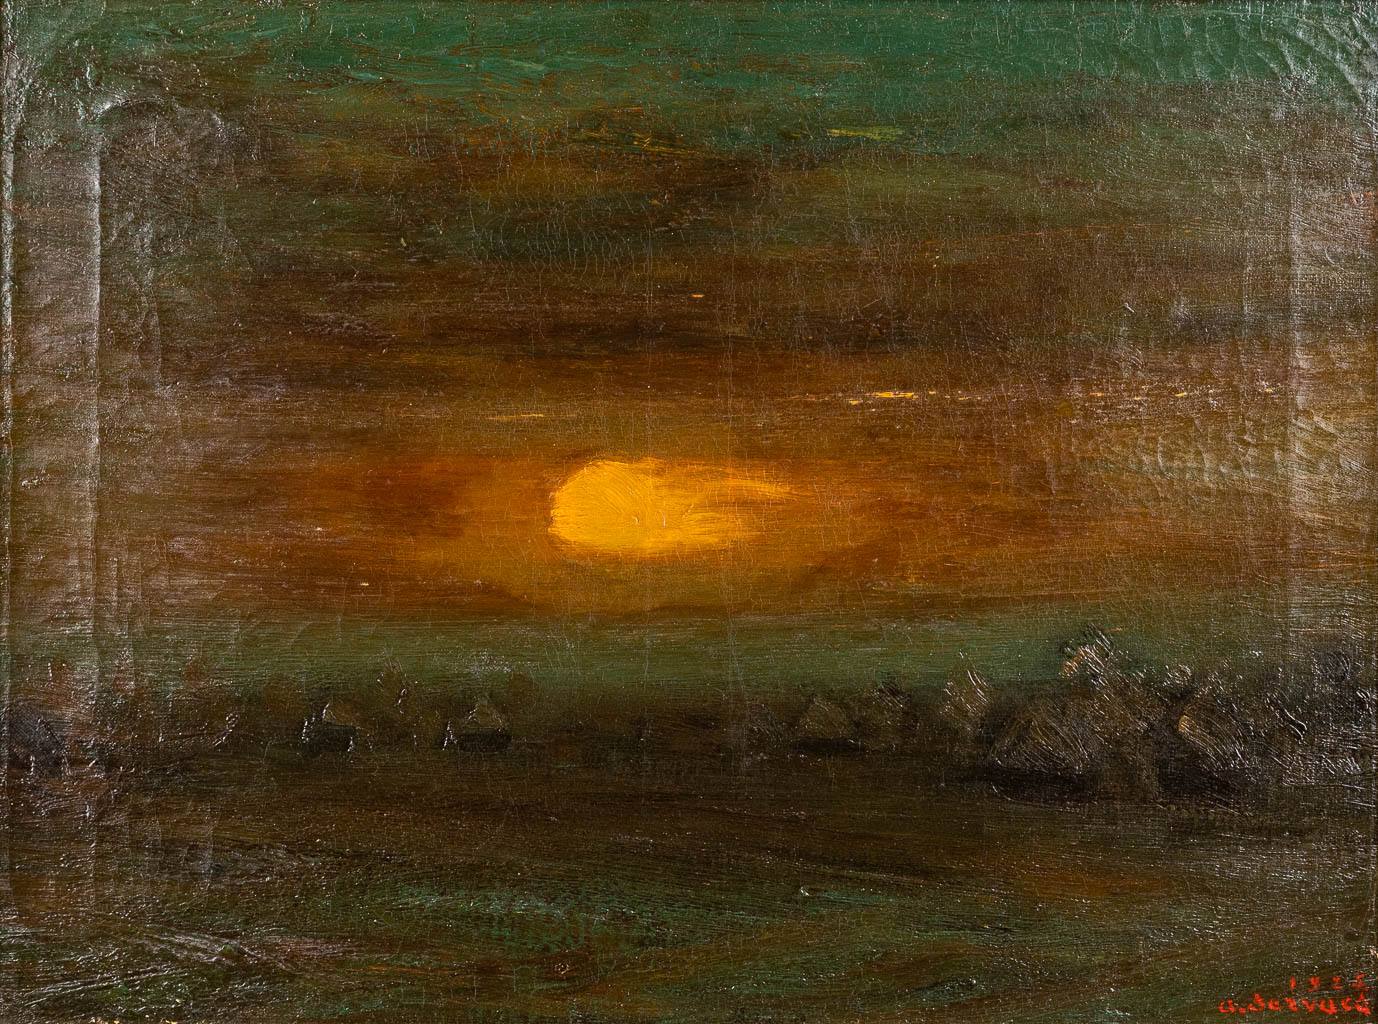 Albert SERVAES (1883-1966) 'Zonsondergang' olie op doek. 1925